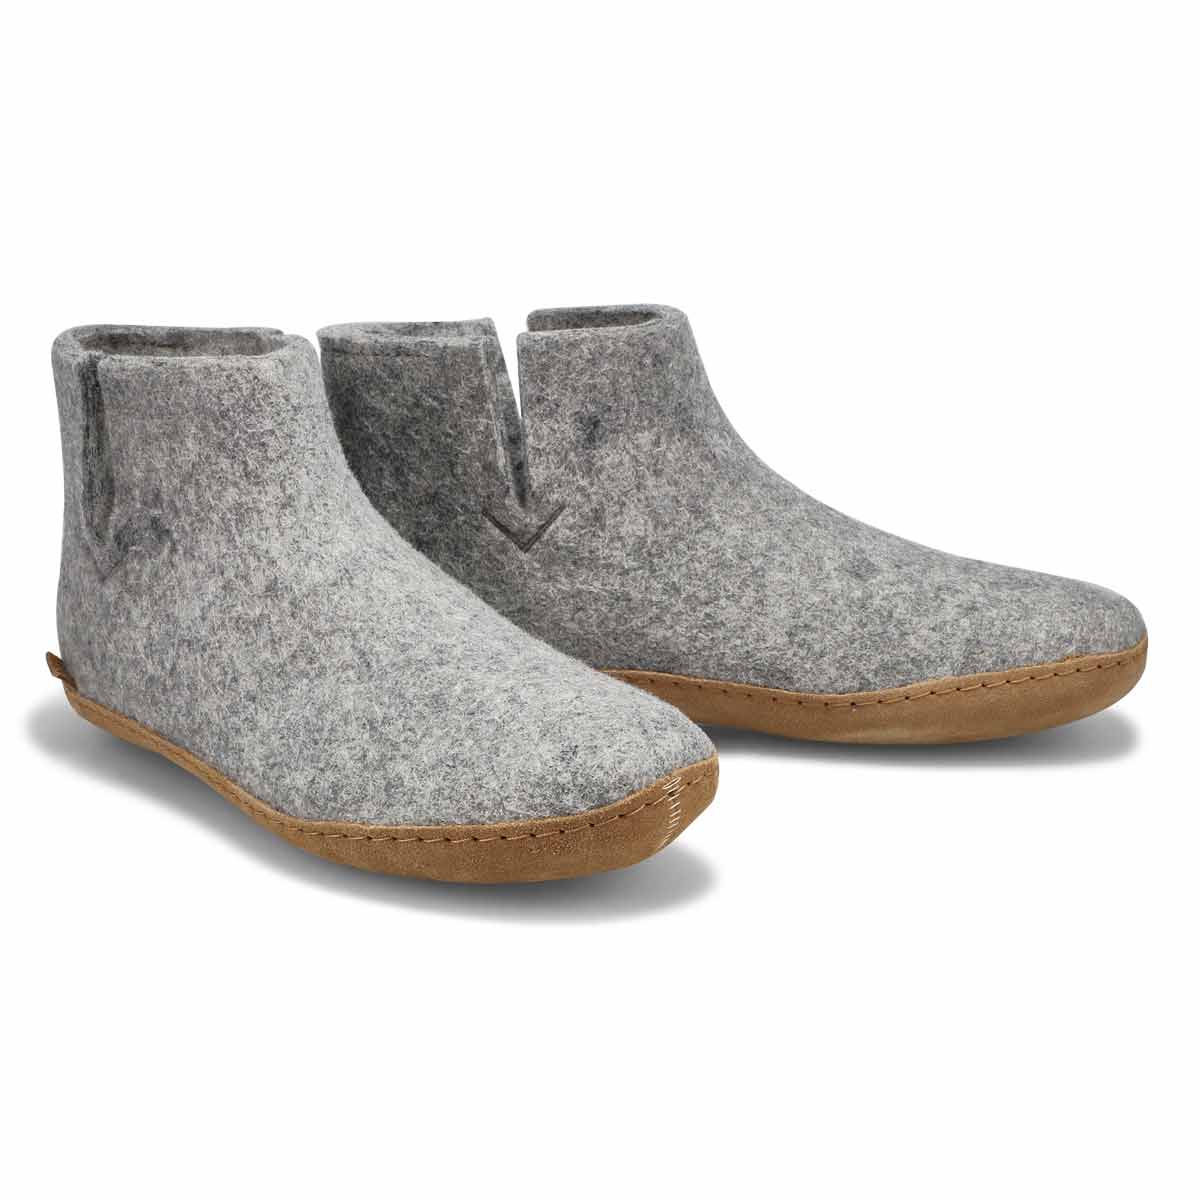 Men's Model G Boot Slipper - Grey